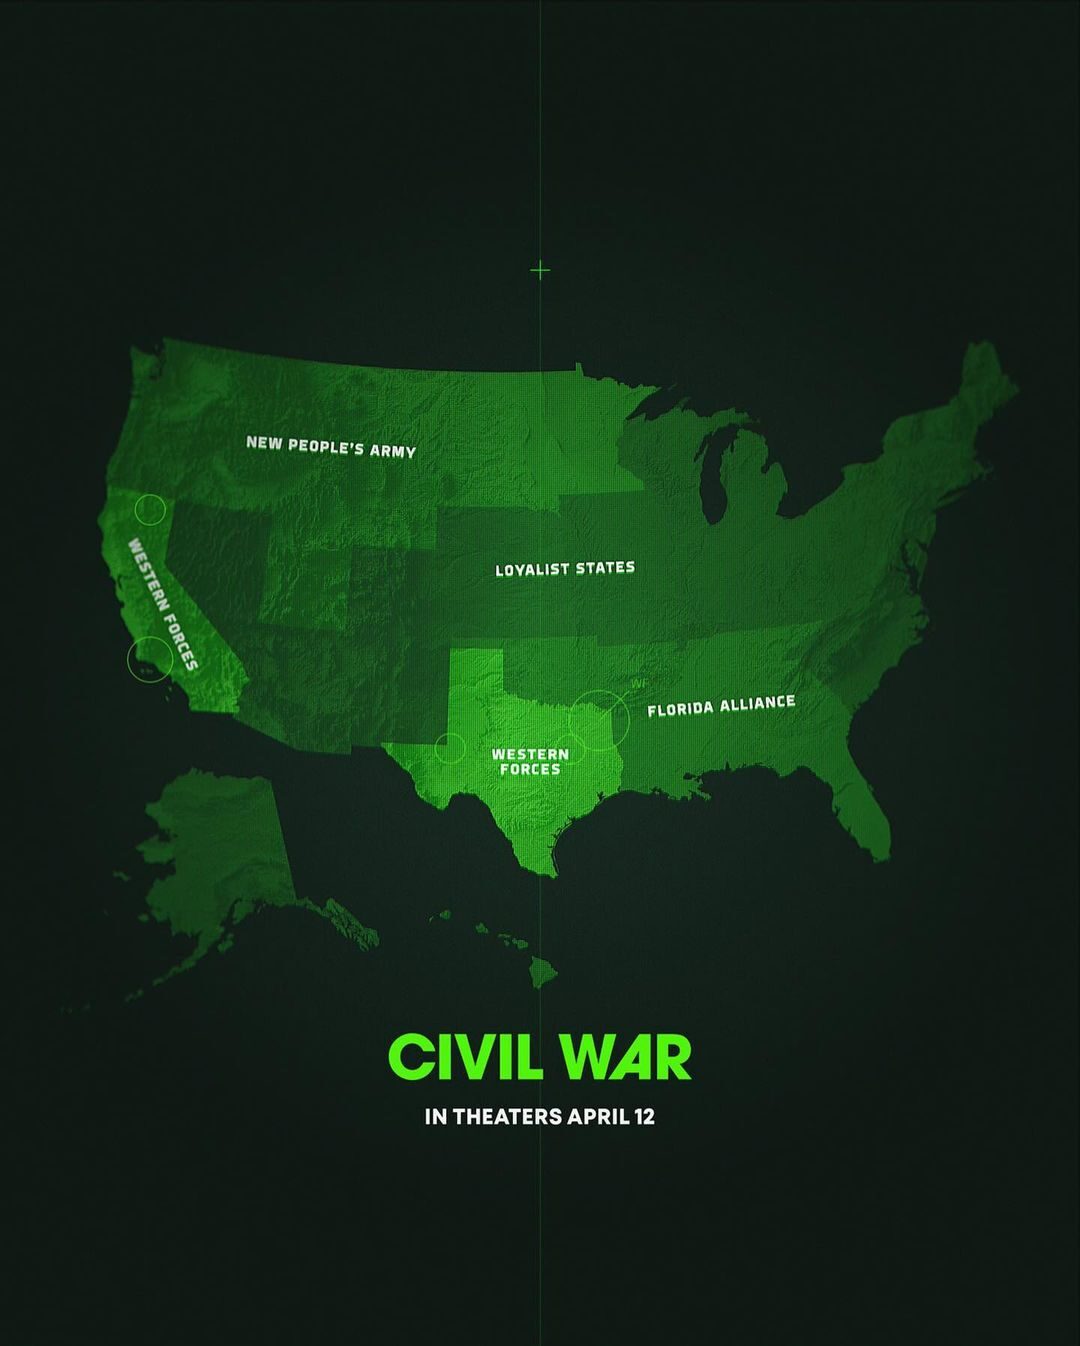 แผนที่ สงครามกลางเมืองสหรัฐอเมริกา ภาพยนตร์Civil war ค่าย A24